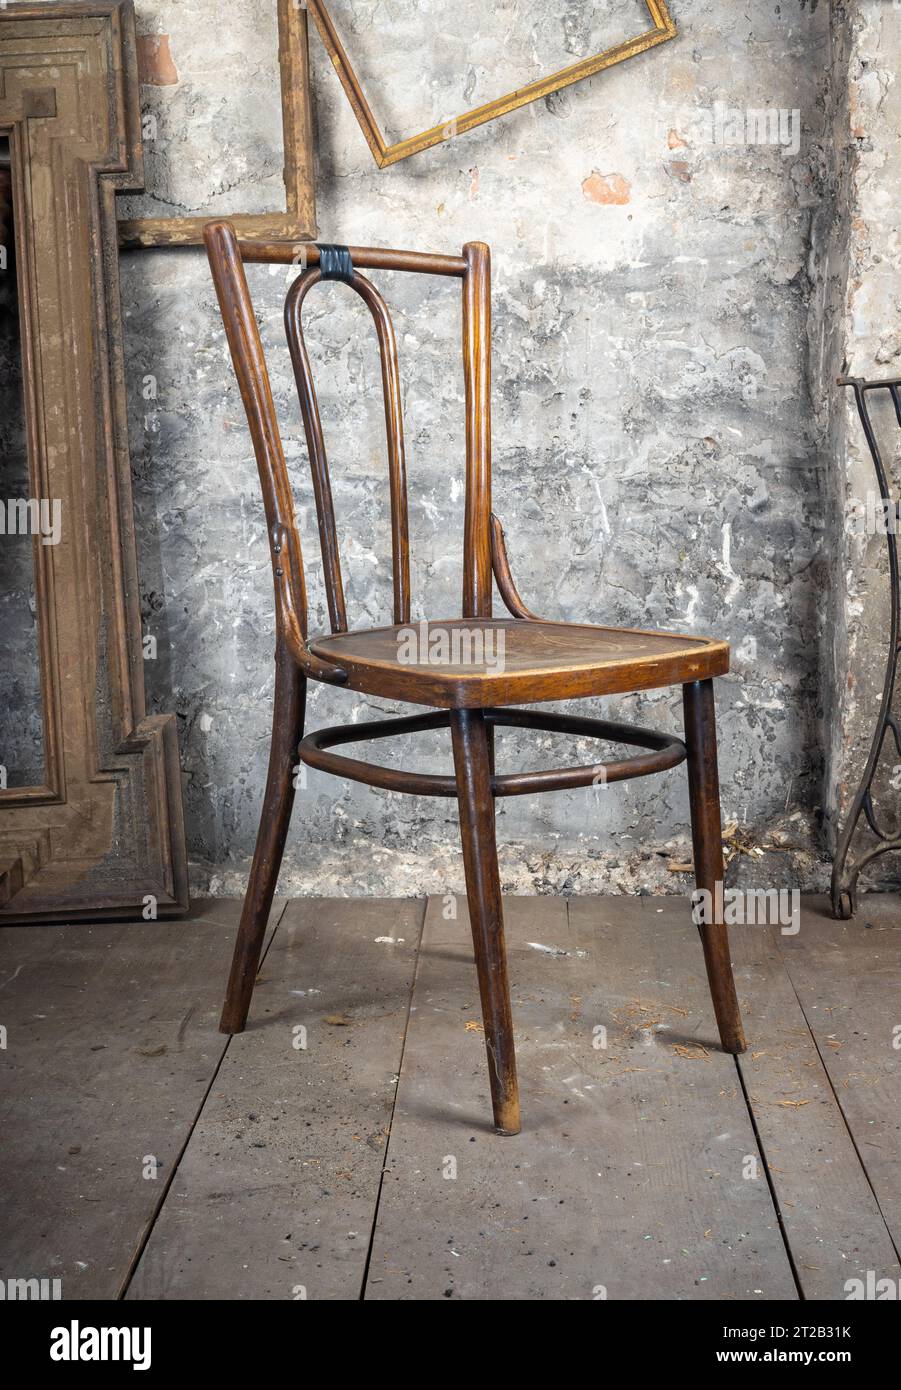 Stile vintage. La vecchia sedia rotta difettosa in una vecchia camera sporca con altre cose d'epoca Foto Stock